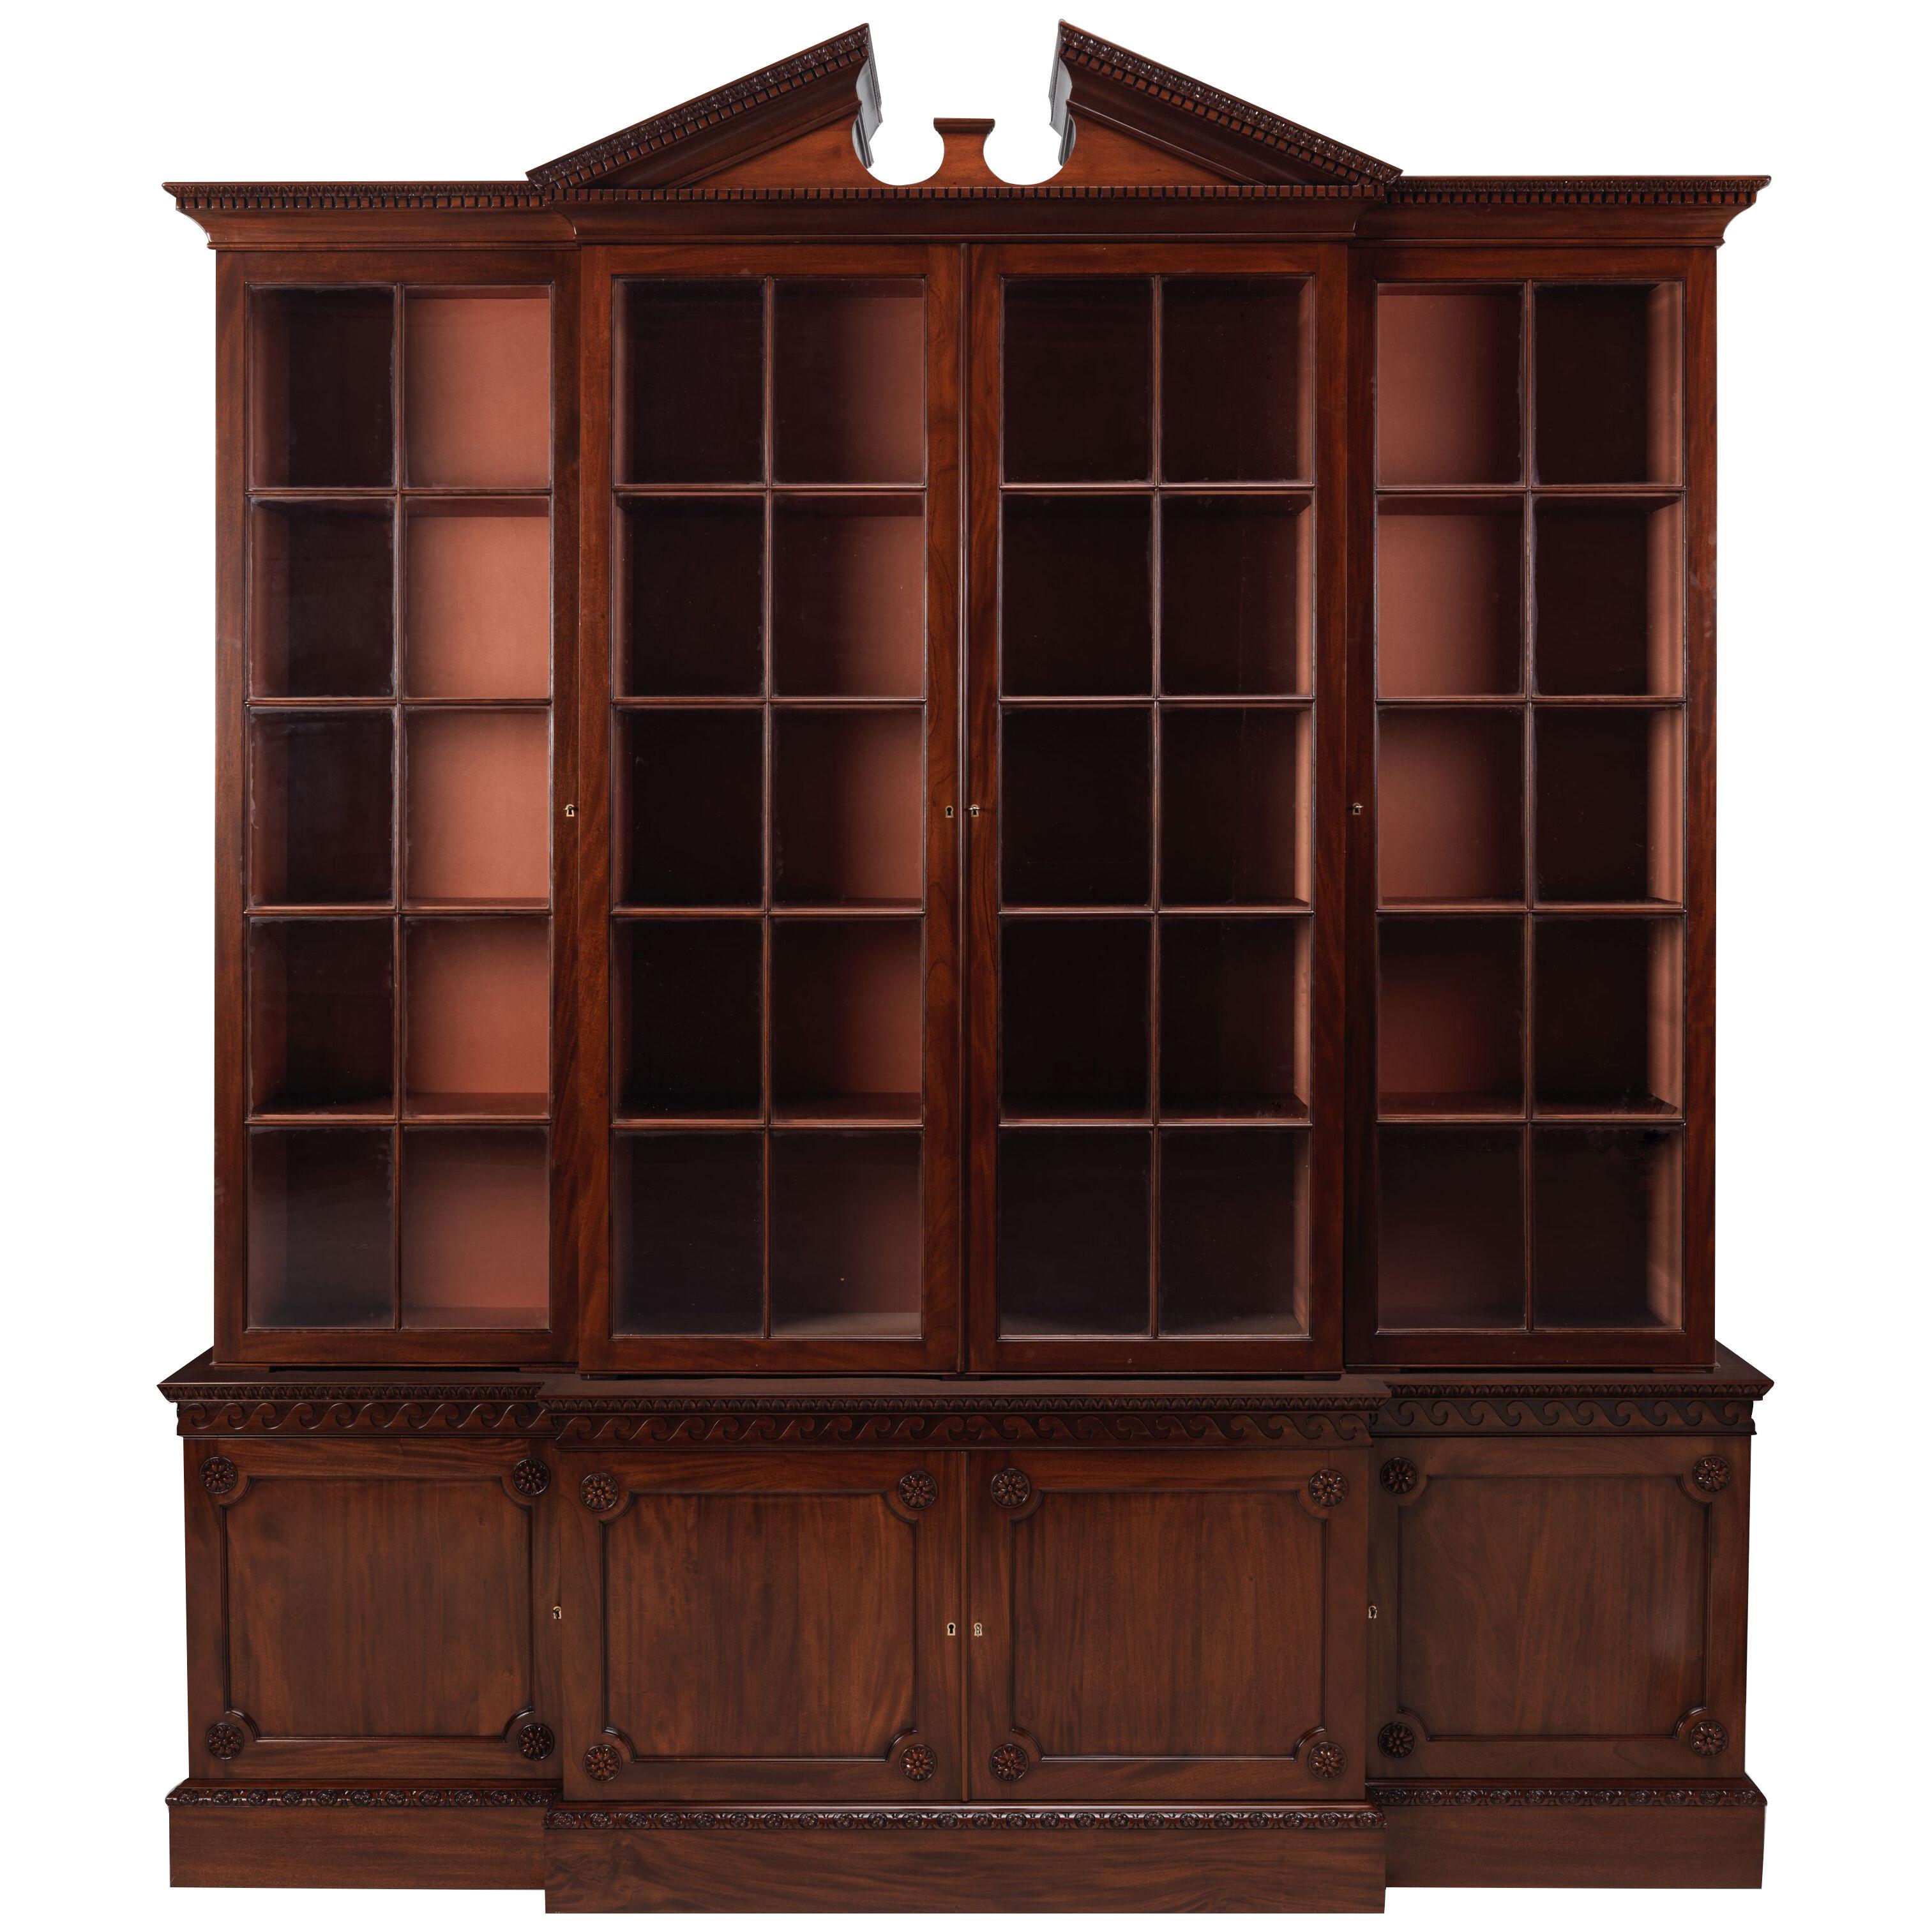 Crichel House Bookcase